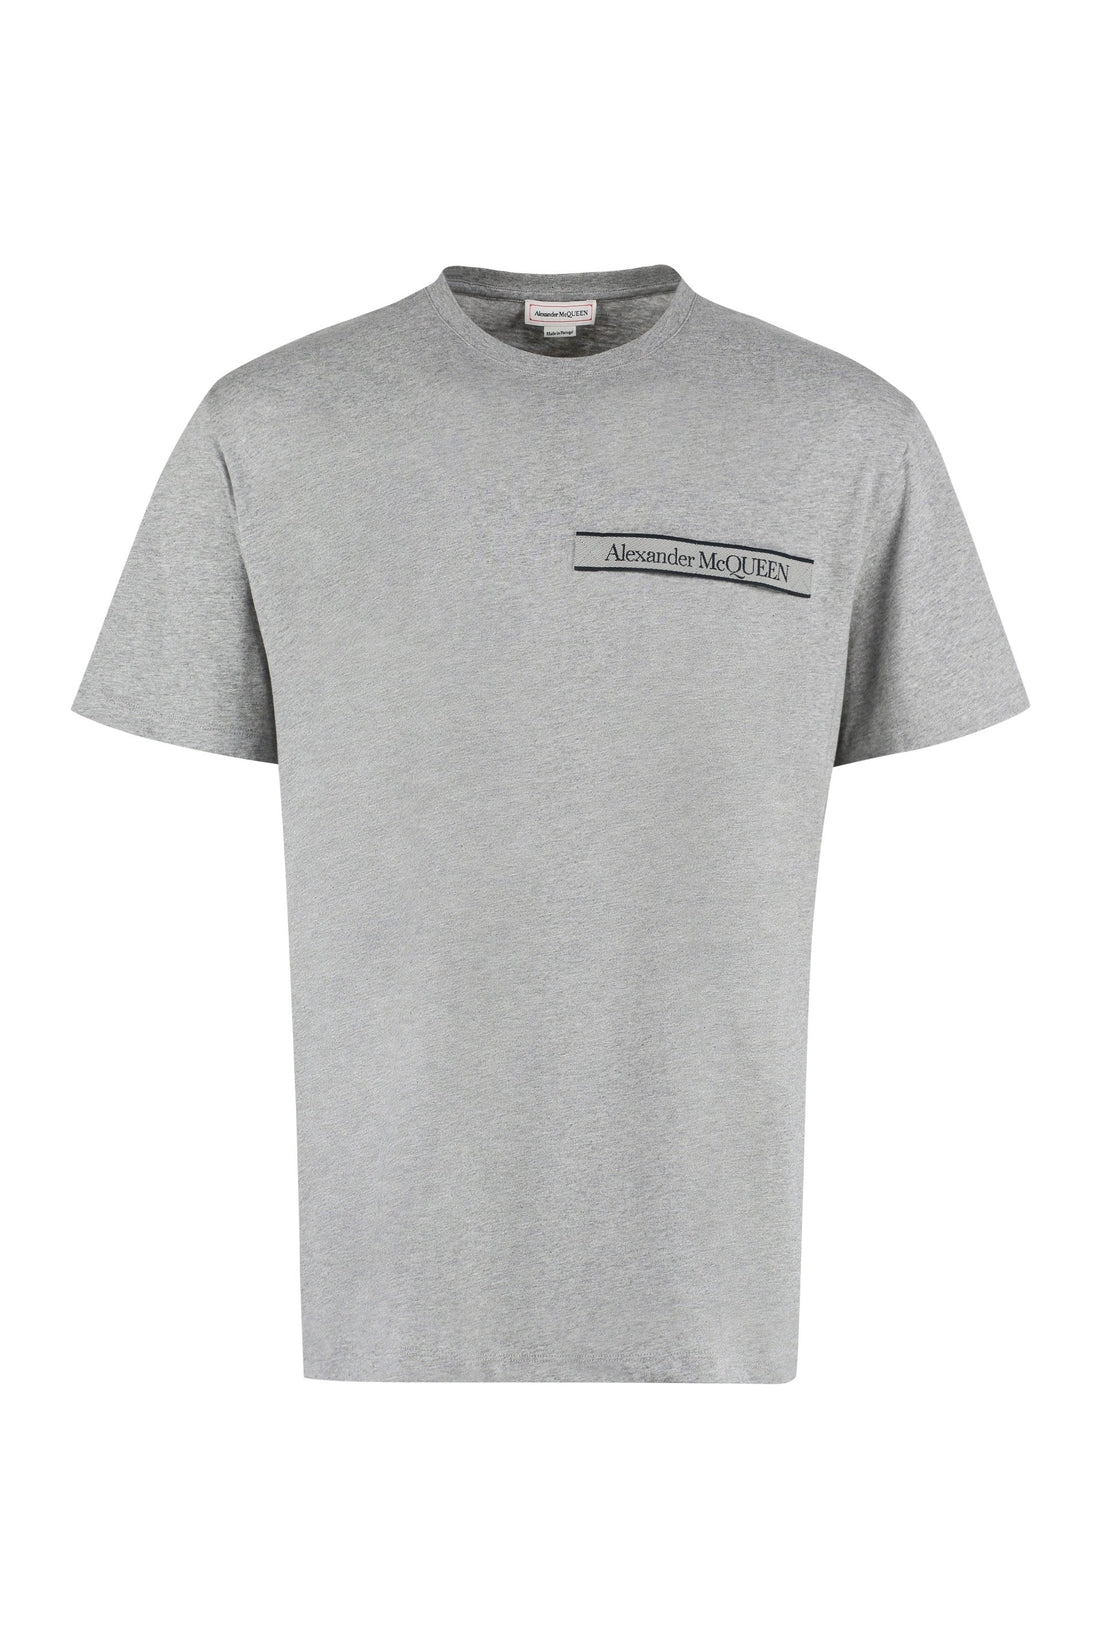 Alexander McQueen-OUTLET-SALE-Logo cotton t-shirt-ARCHIVIST